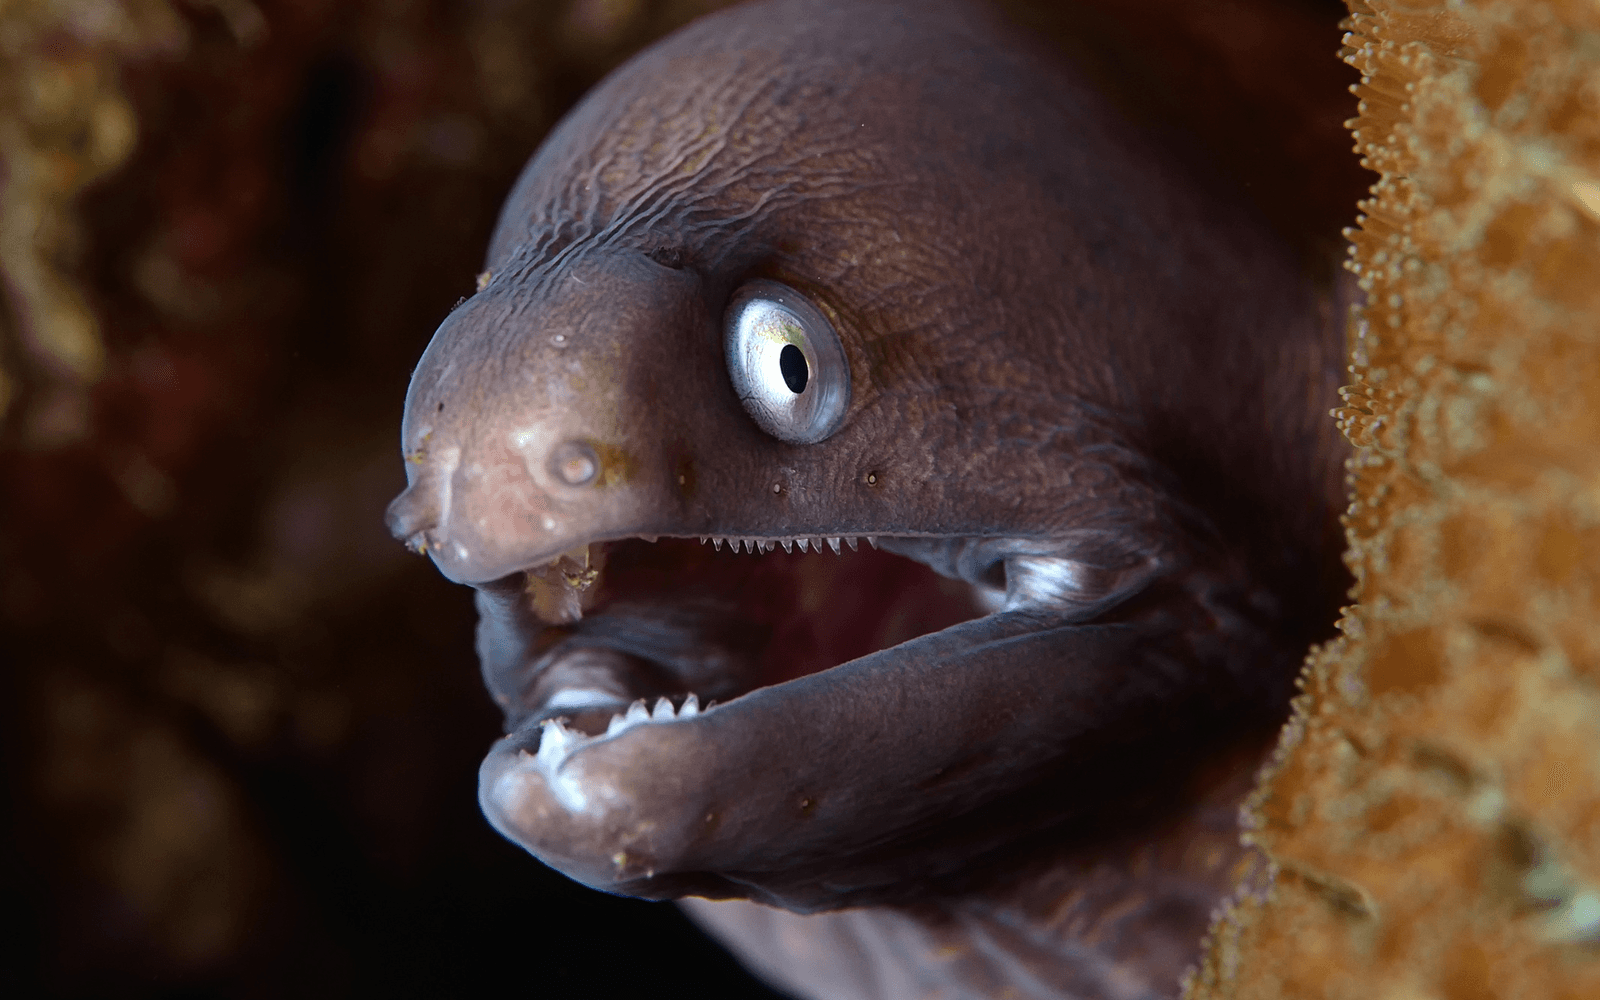 Moray eel with sharp teeth